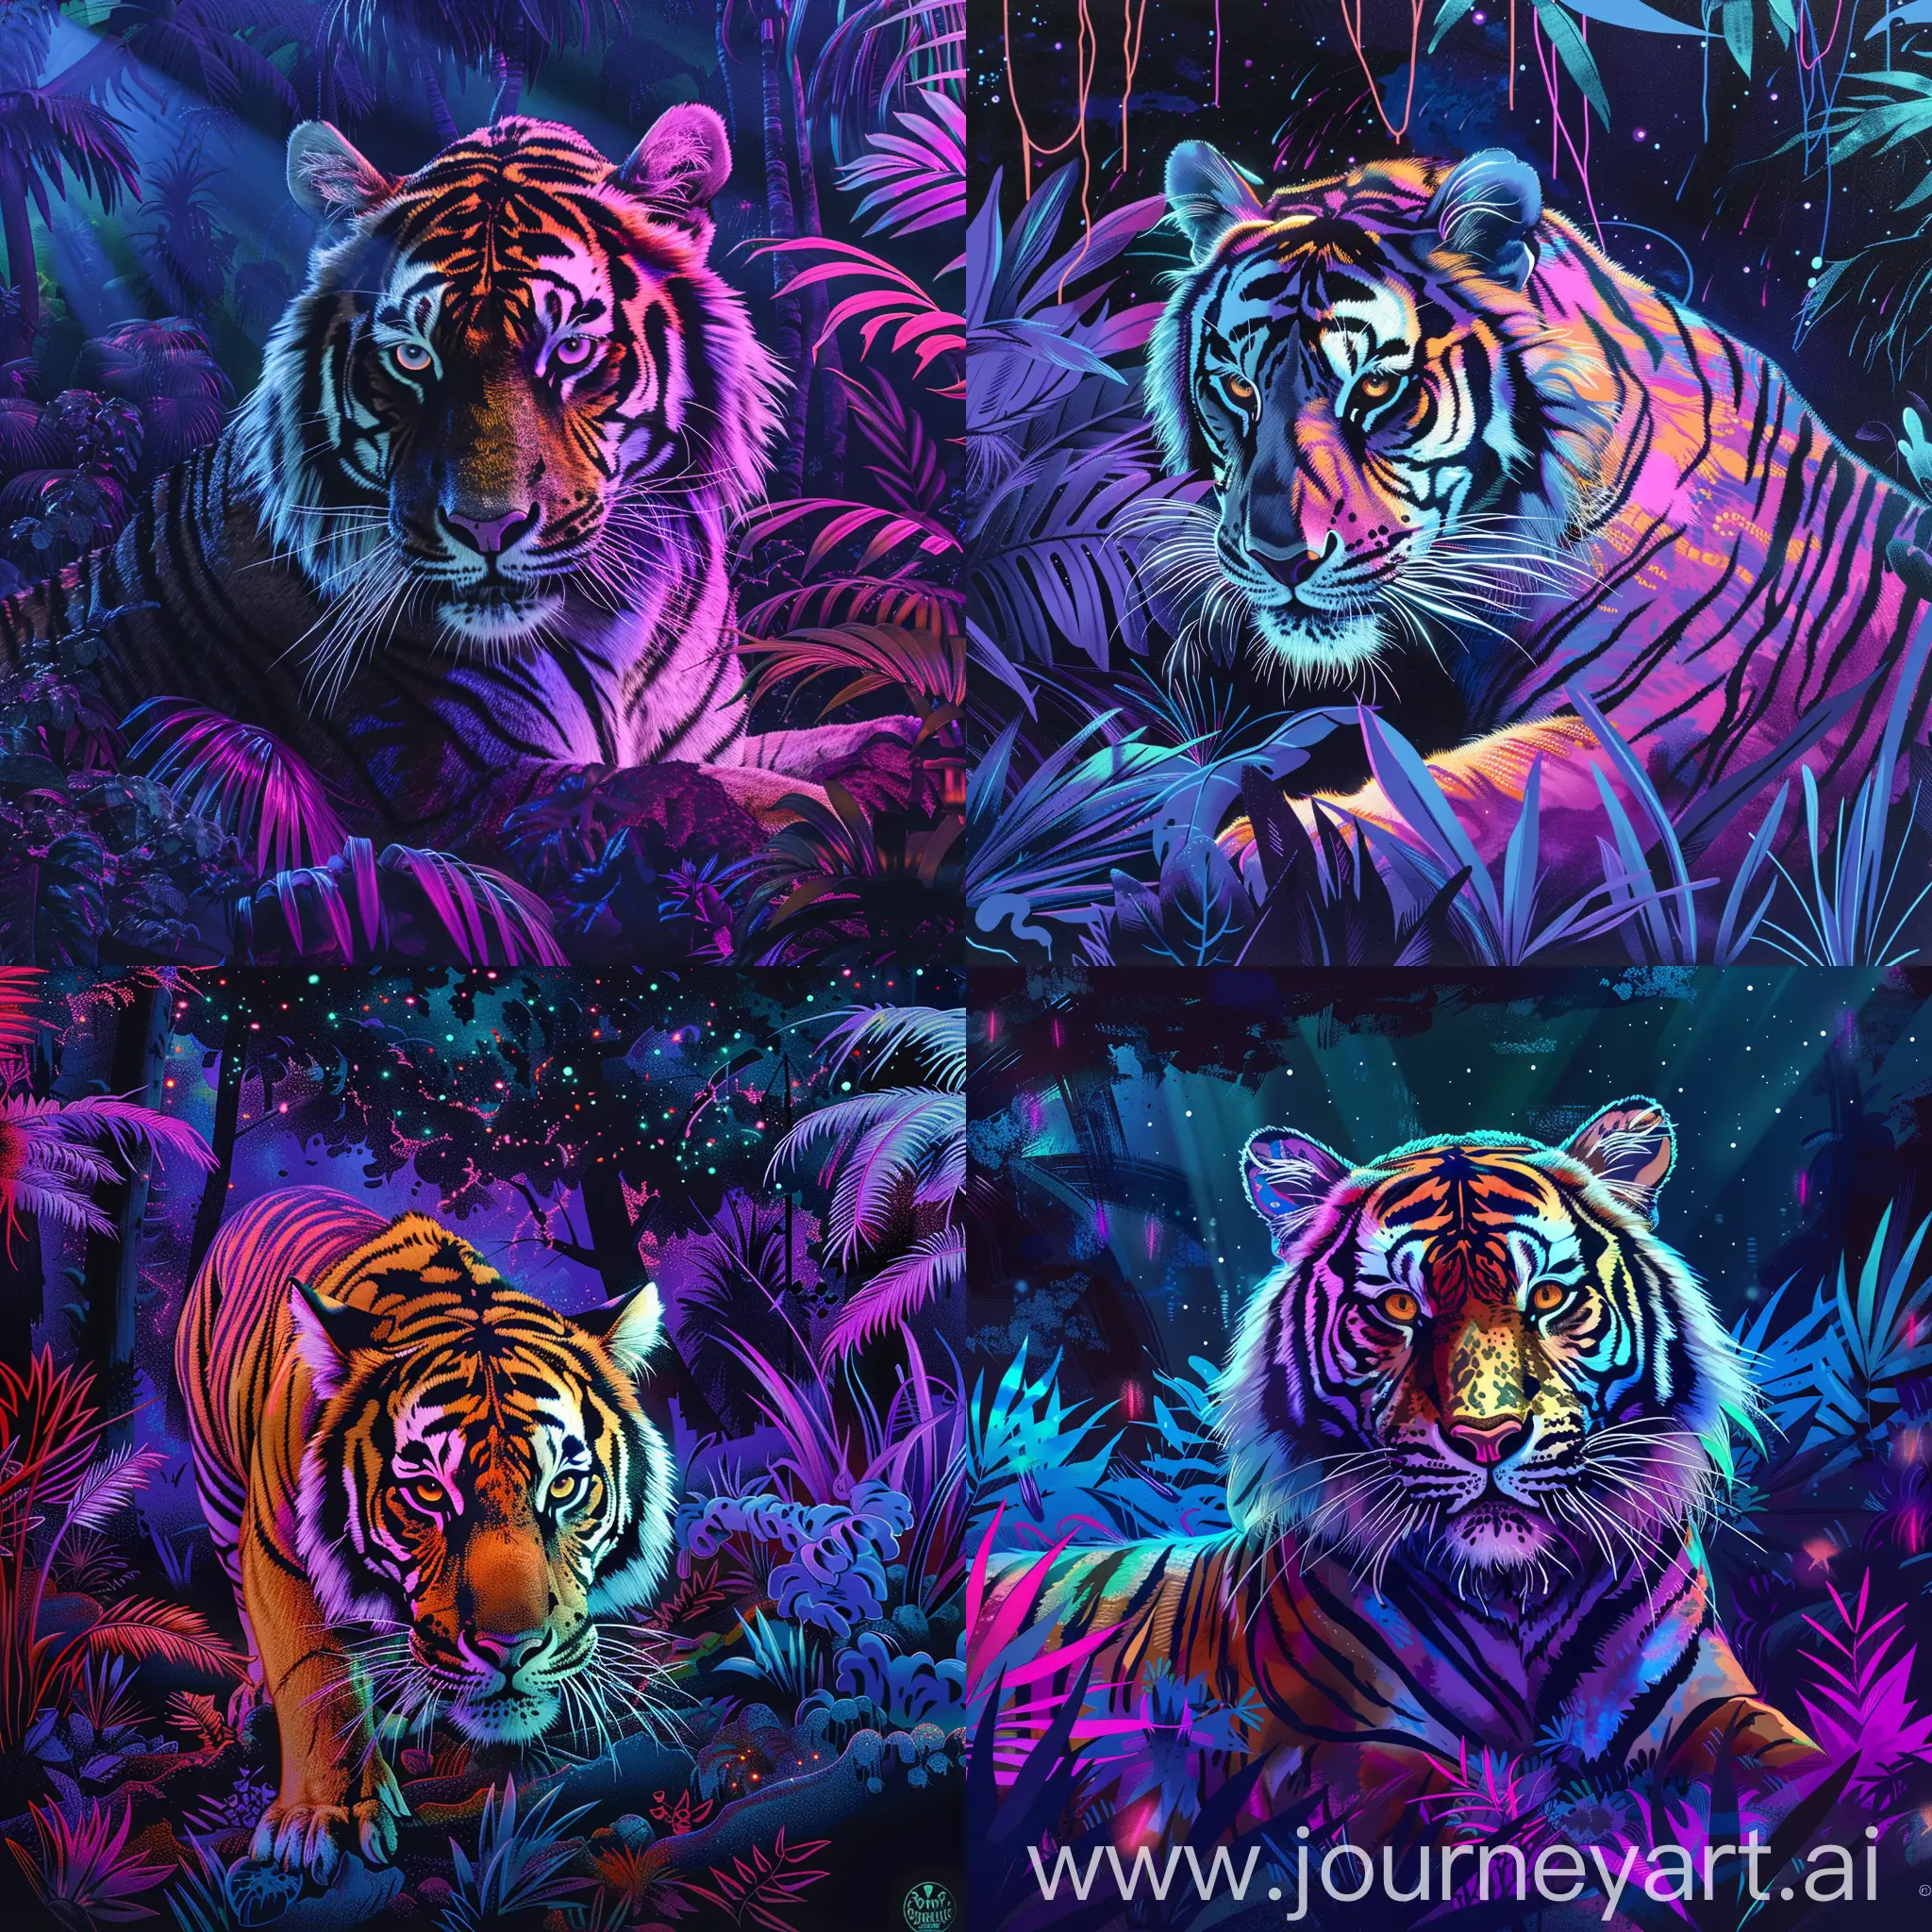 Neon-Jungle-Tiger-Art-Vibrant-Tiger-in-a-Colorful-Urban-Landscape